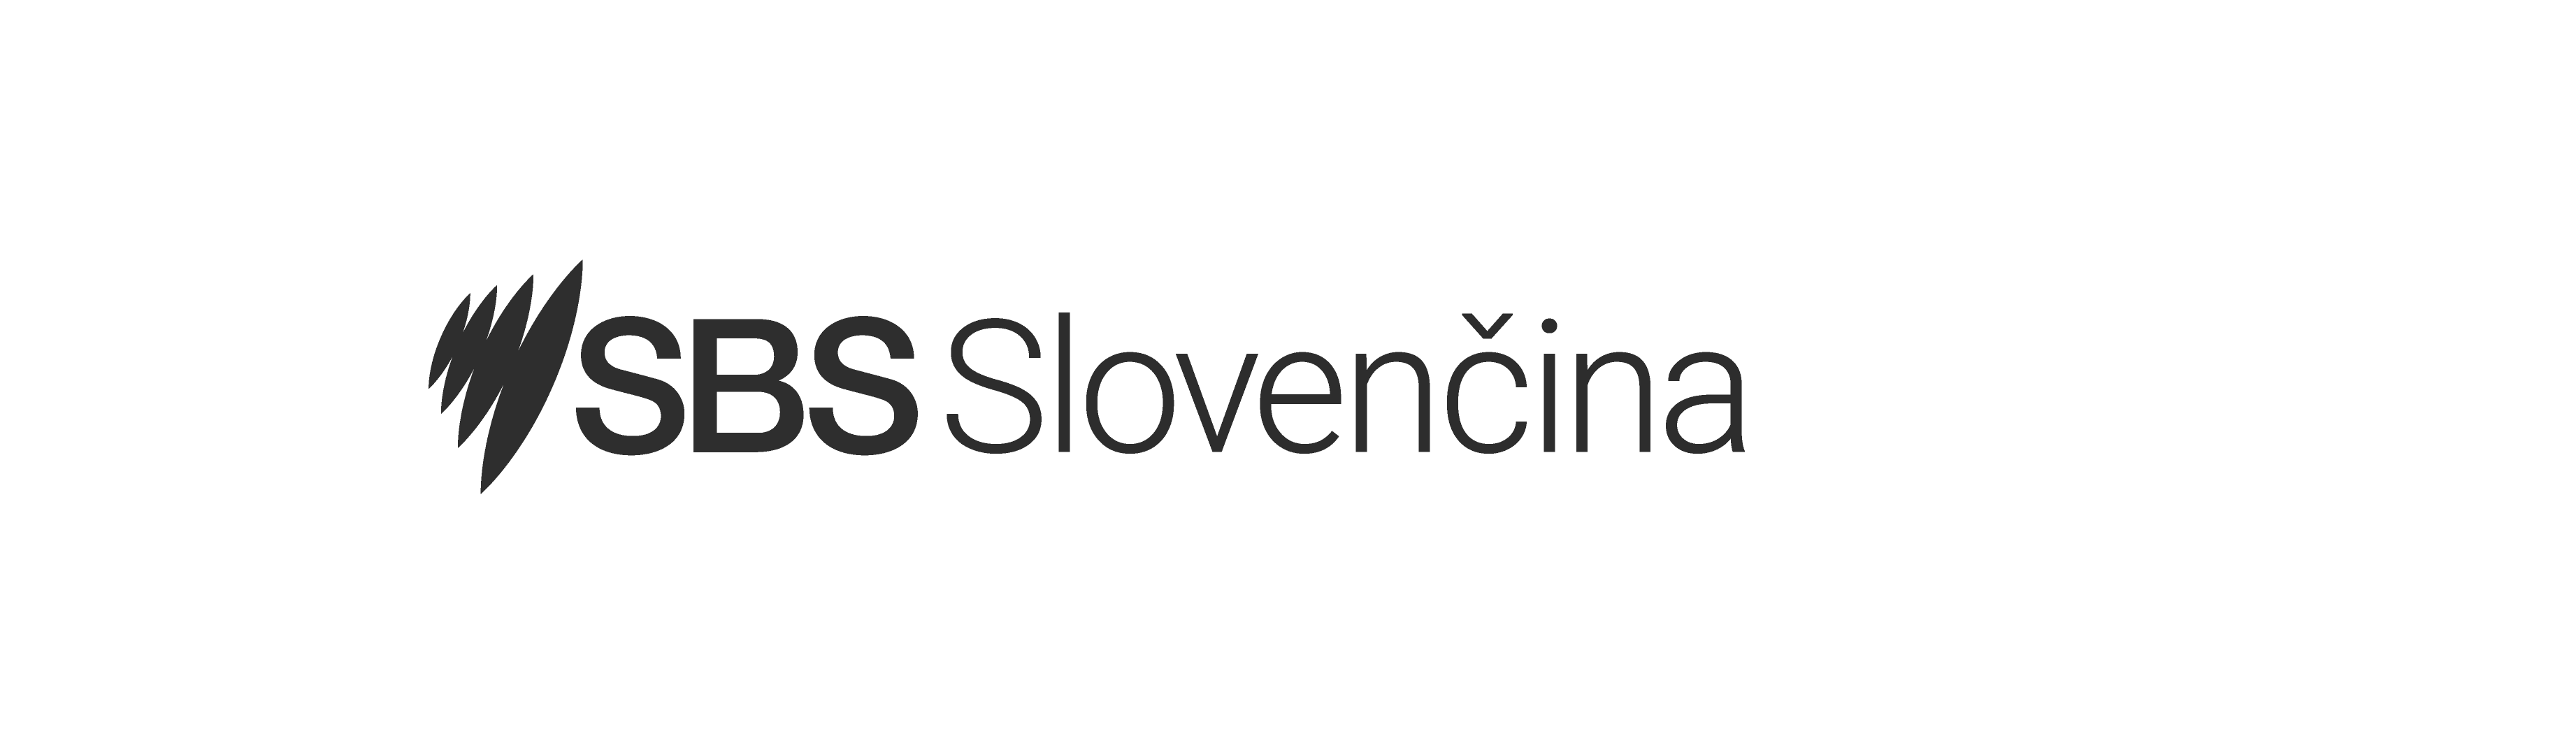 SBS Slovencina